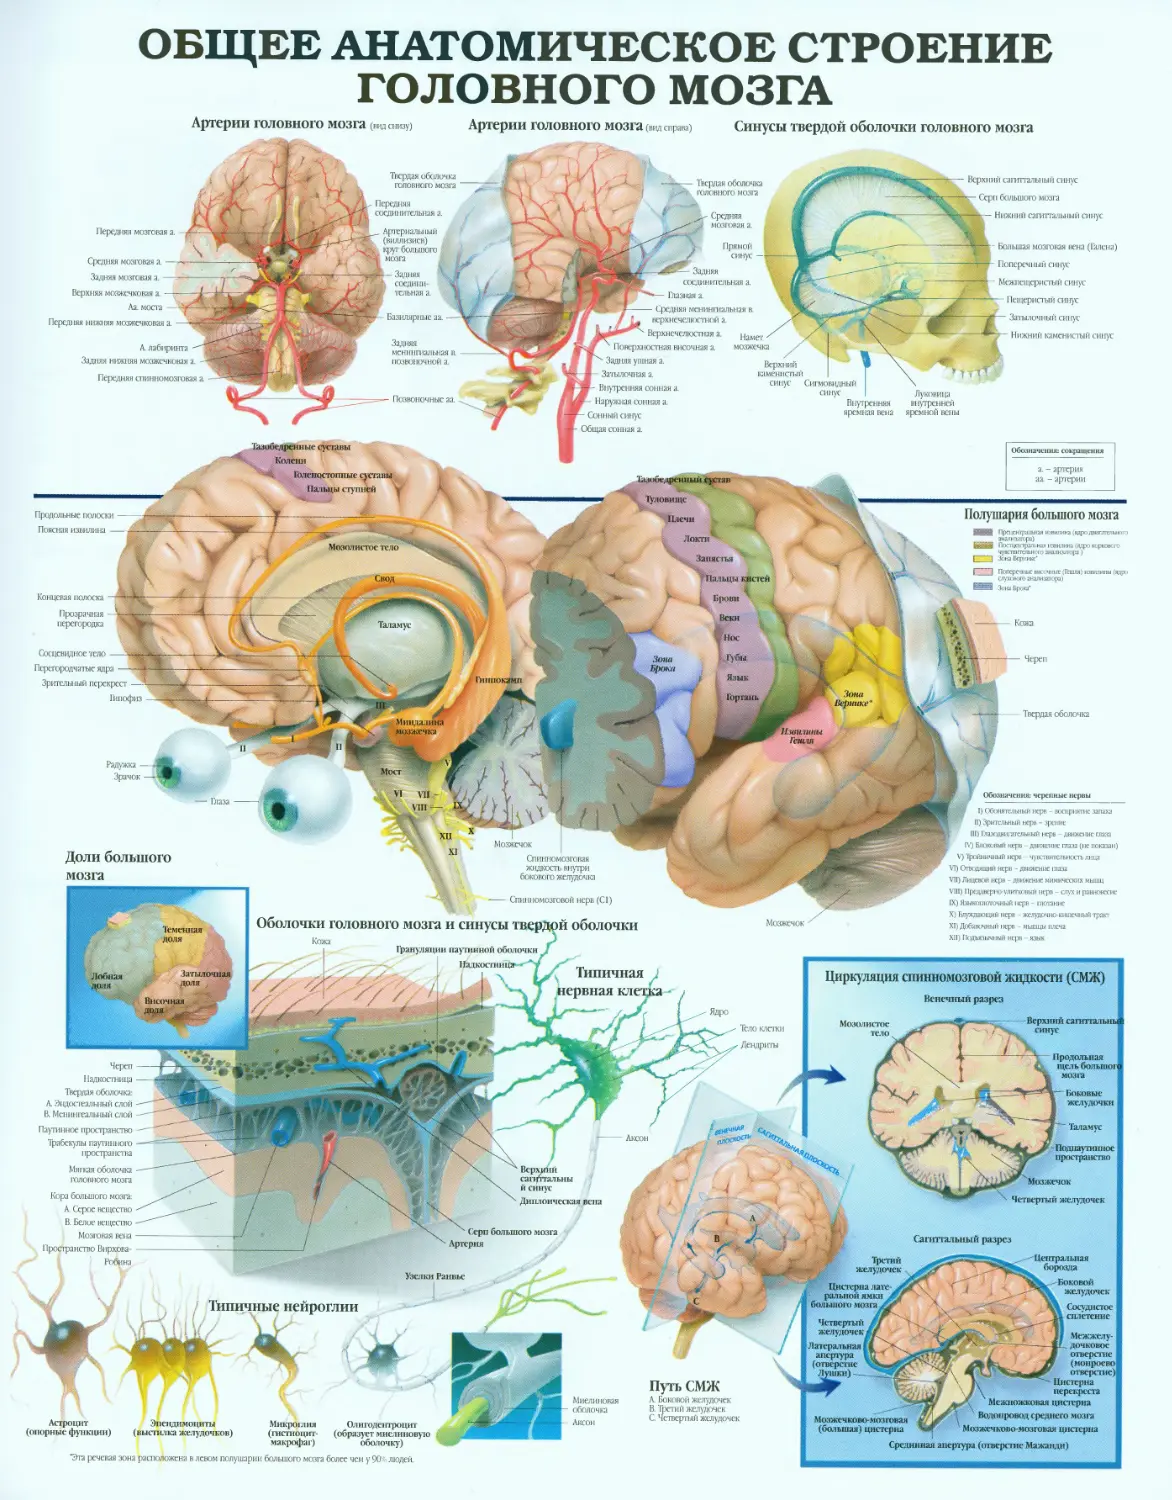 16.общее анатомическое строение головного мозга